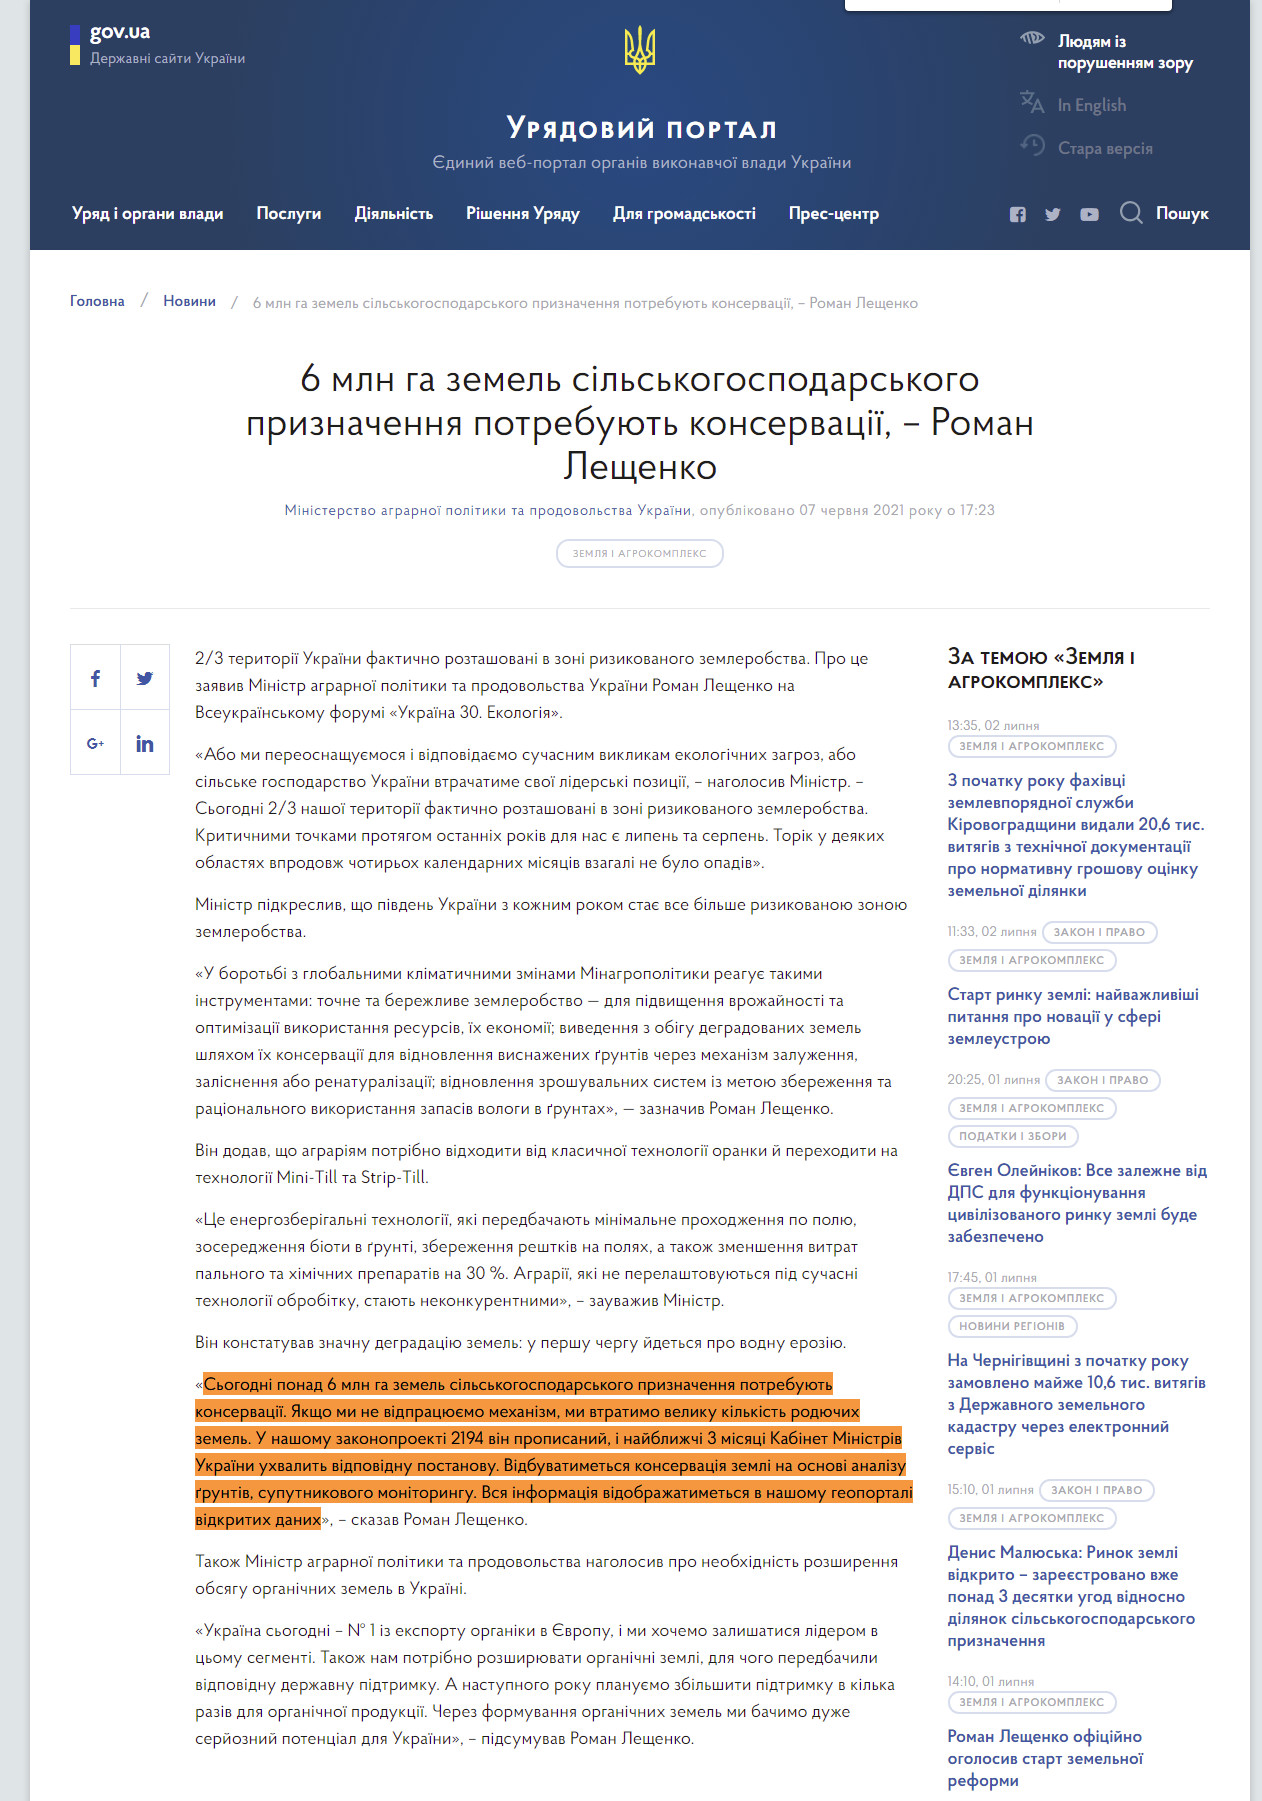 https://www.kmu.gov.ua/news/6-mln-ga-zemel-silskogospodarskogo-priznachennya-potrebuyut-konservaciyi-roman-leshchenko